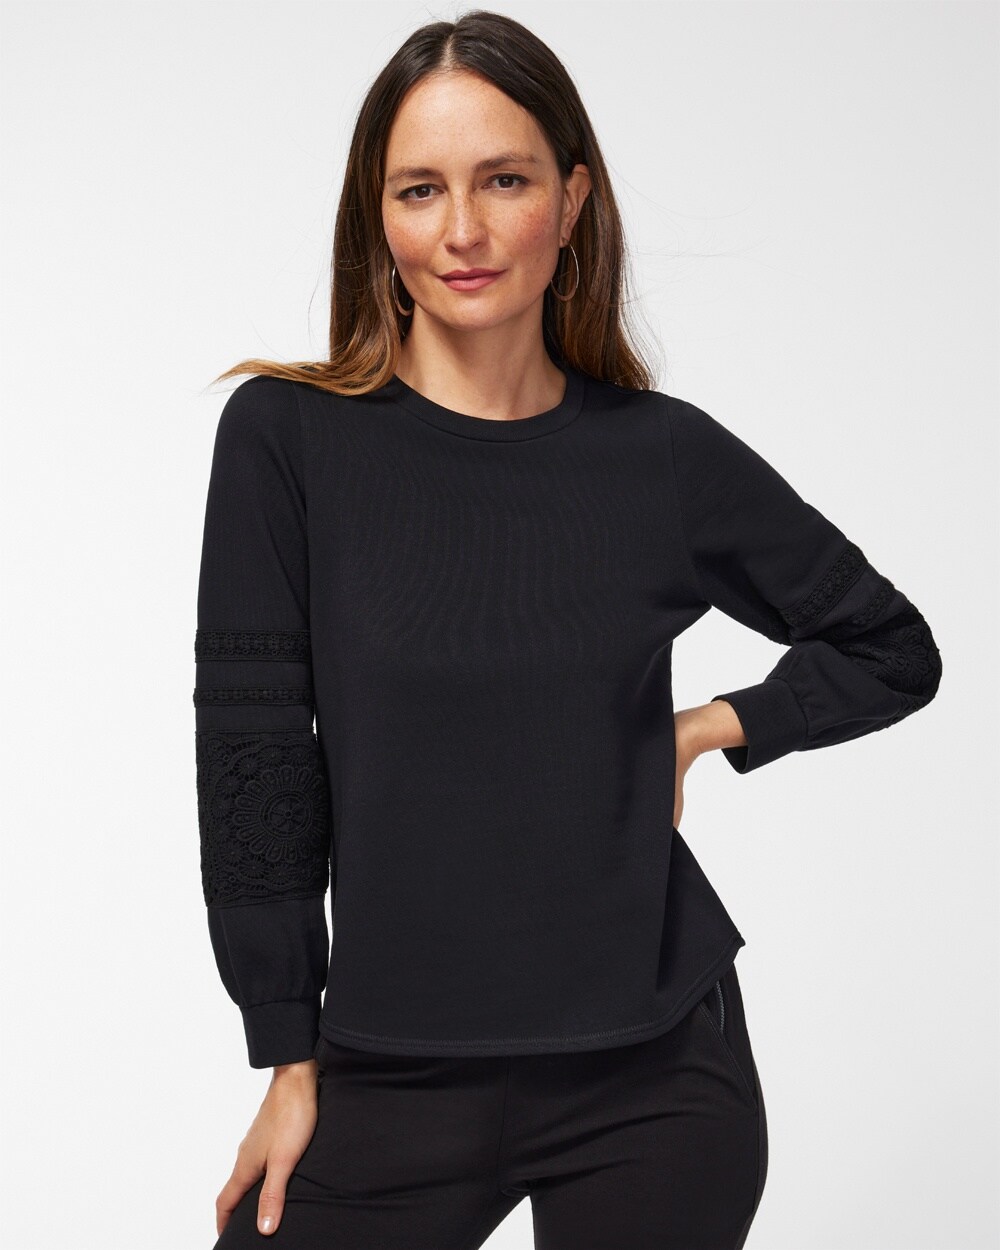 Zenergy Lace Trim Sleeve Sweatshirt